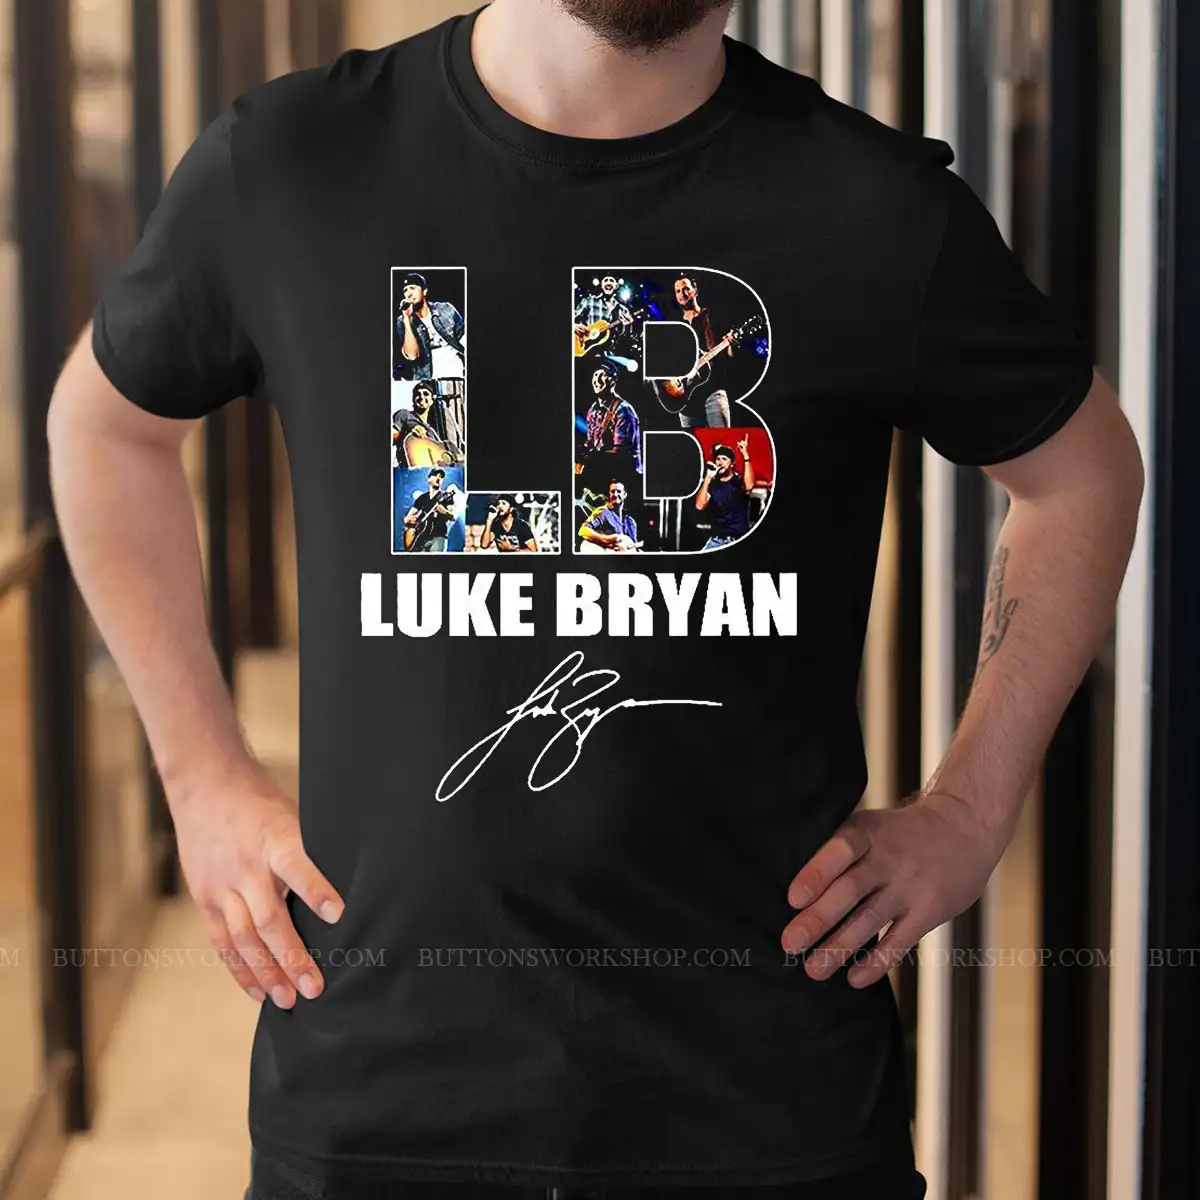 Luke Bryan Shirt Unisex Tshirt